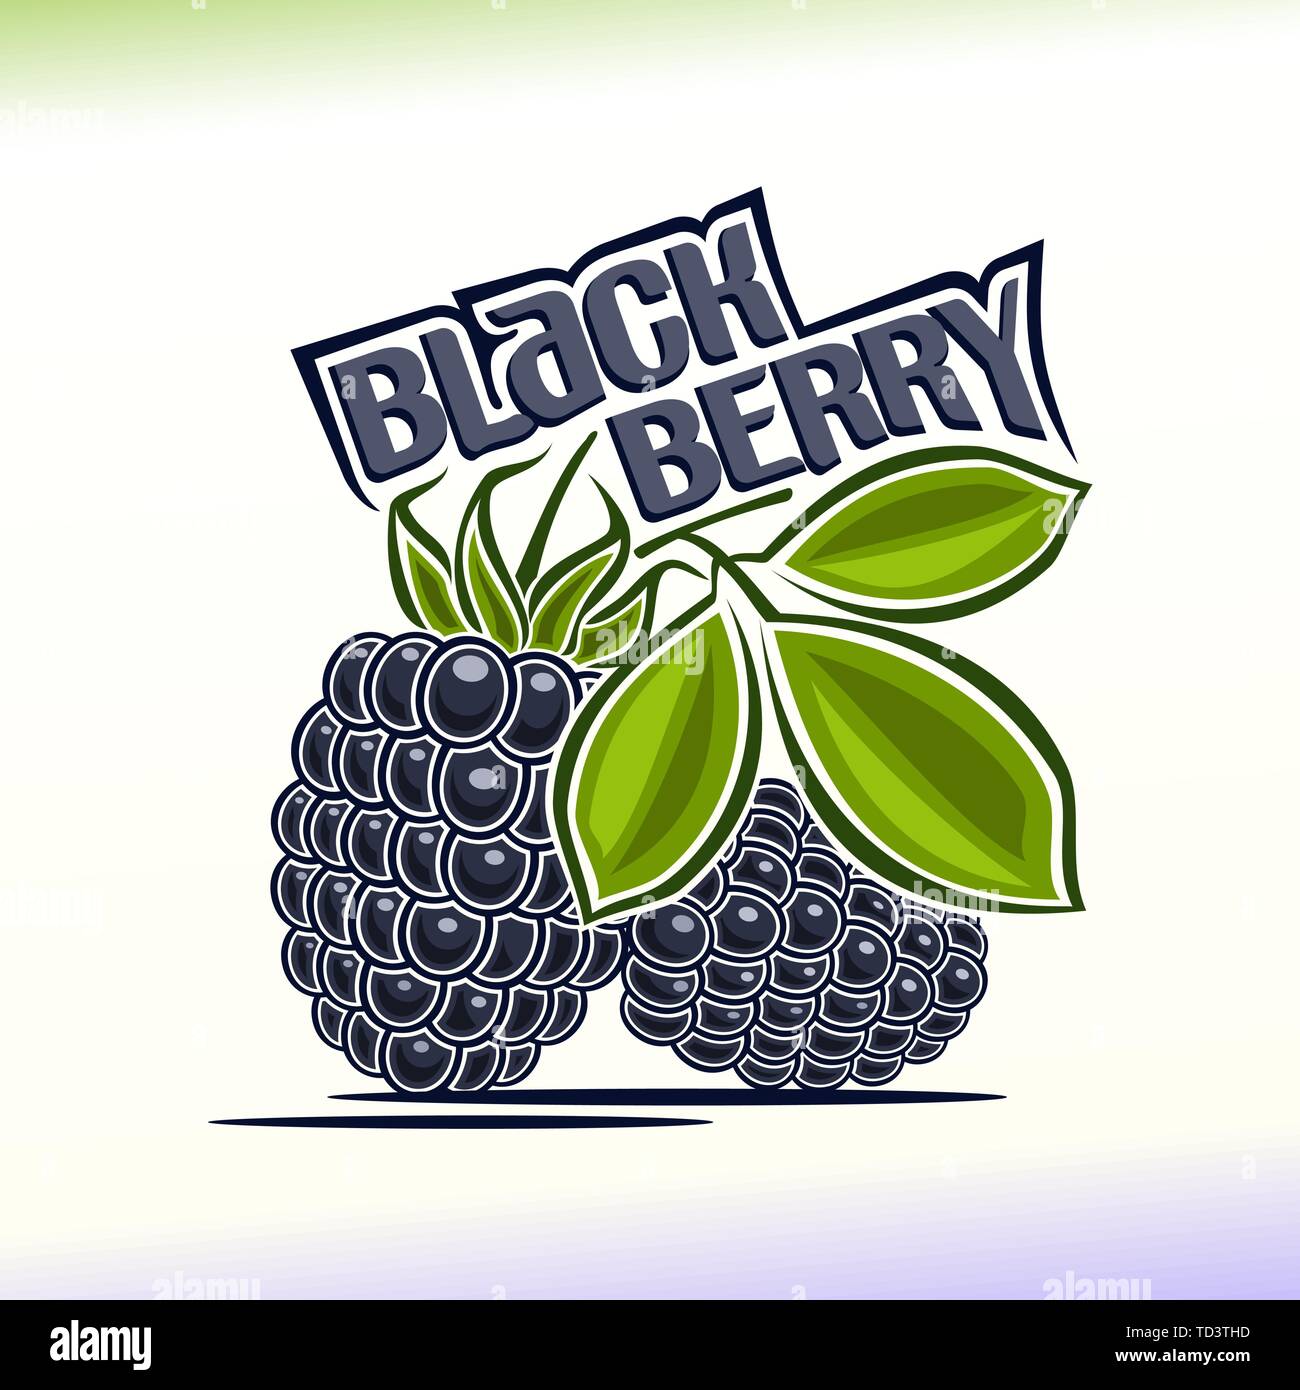 Vektor logo für Blackberry Stock Vektor